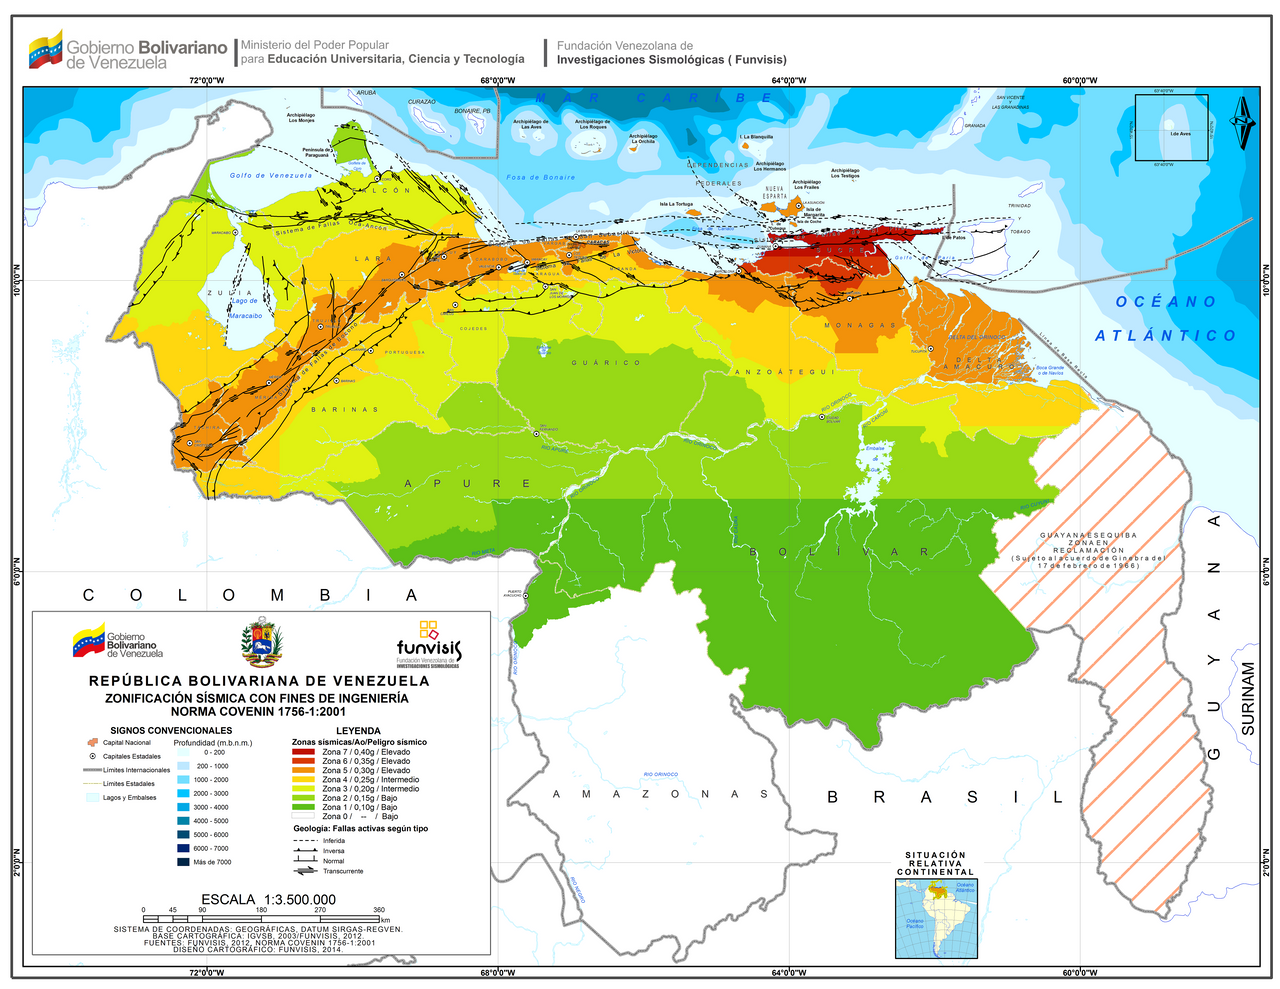 Венесуэла карта климата. Климат крата Венесуэлы. Венесуэла карта климата на руском. Климатическая карта Венесуэлы. Природные зоны венесуэлы и их особенности